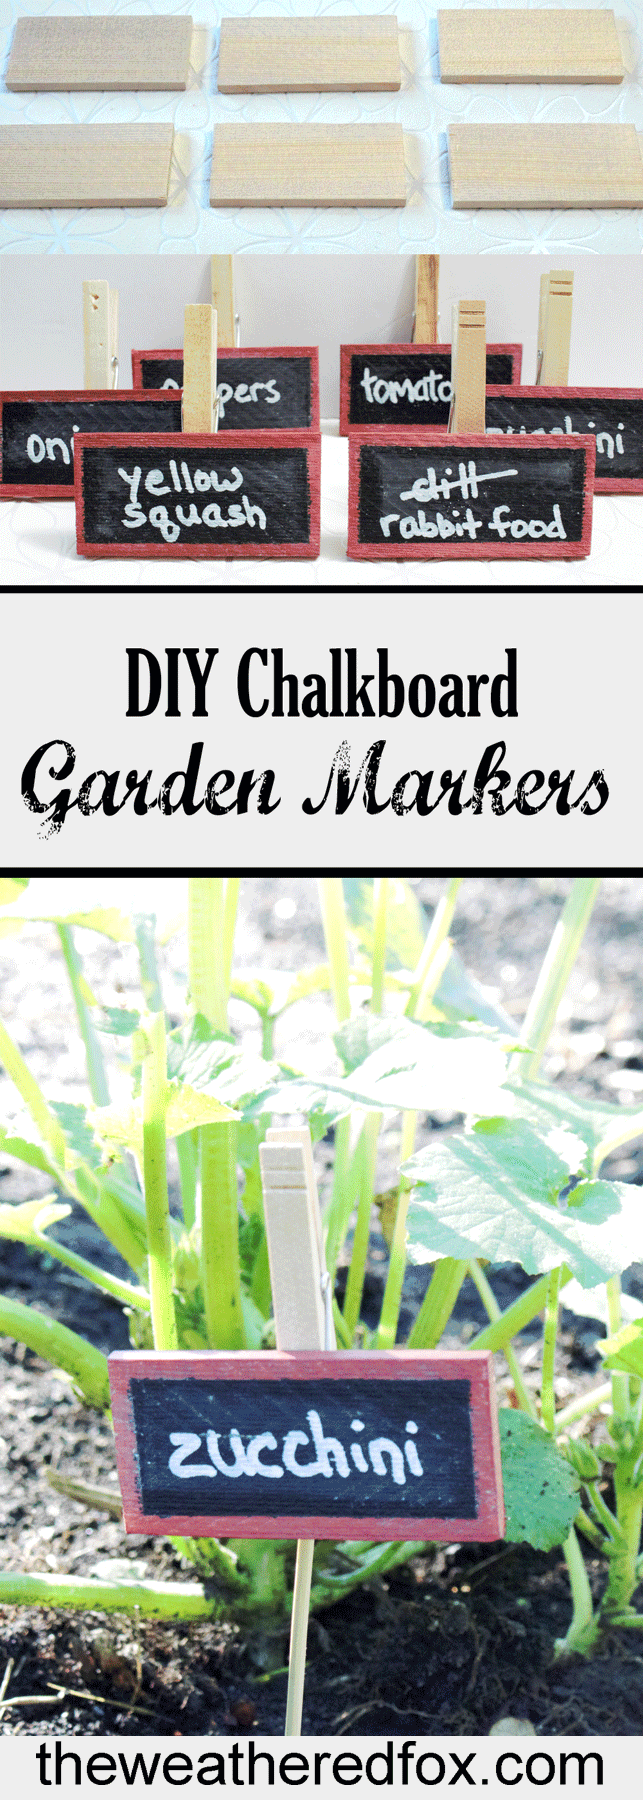 DIY Chalkboard Garden Markers